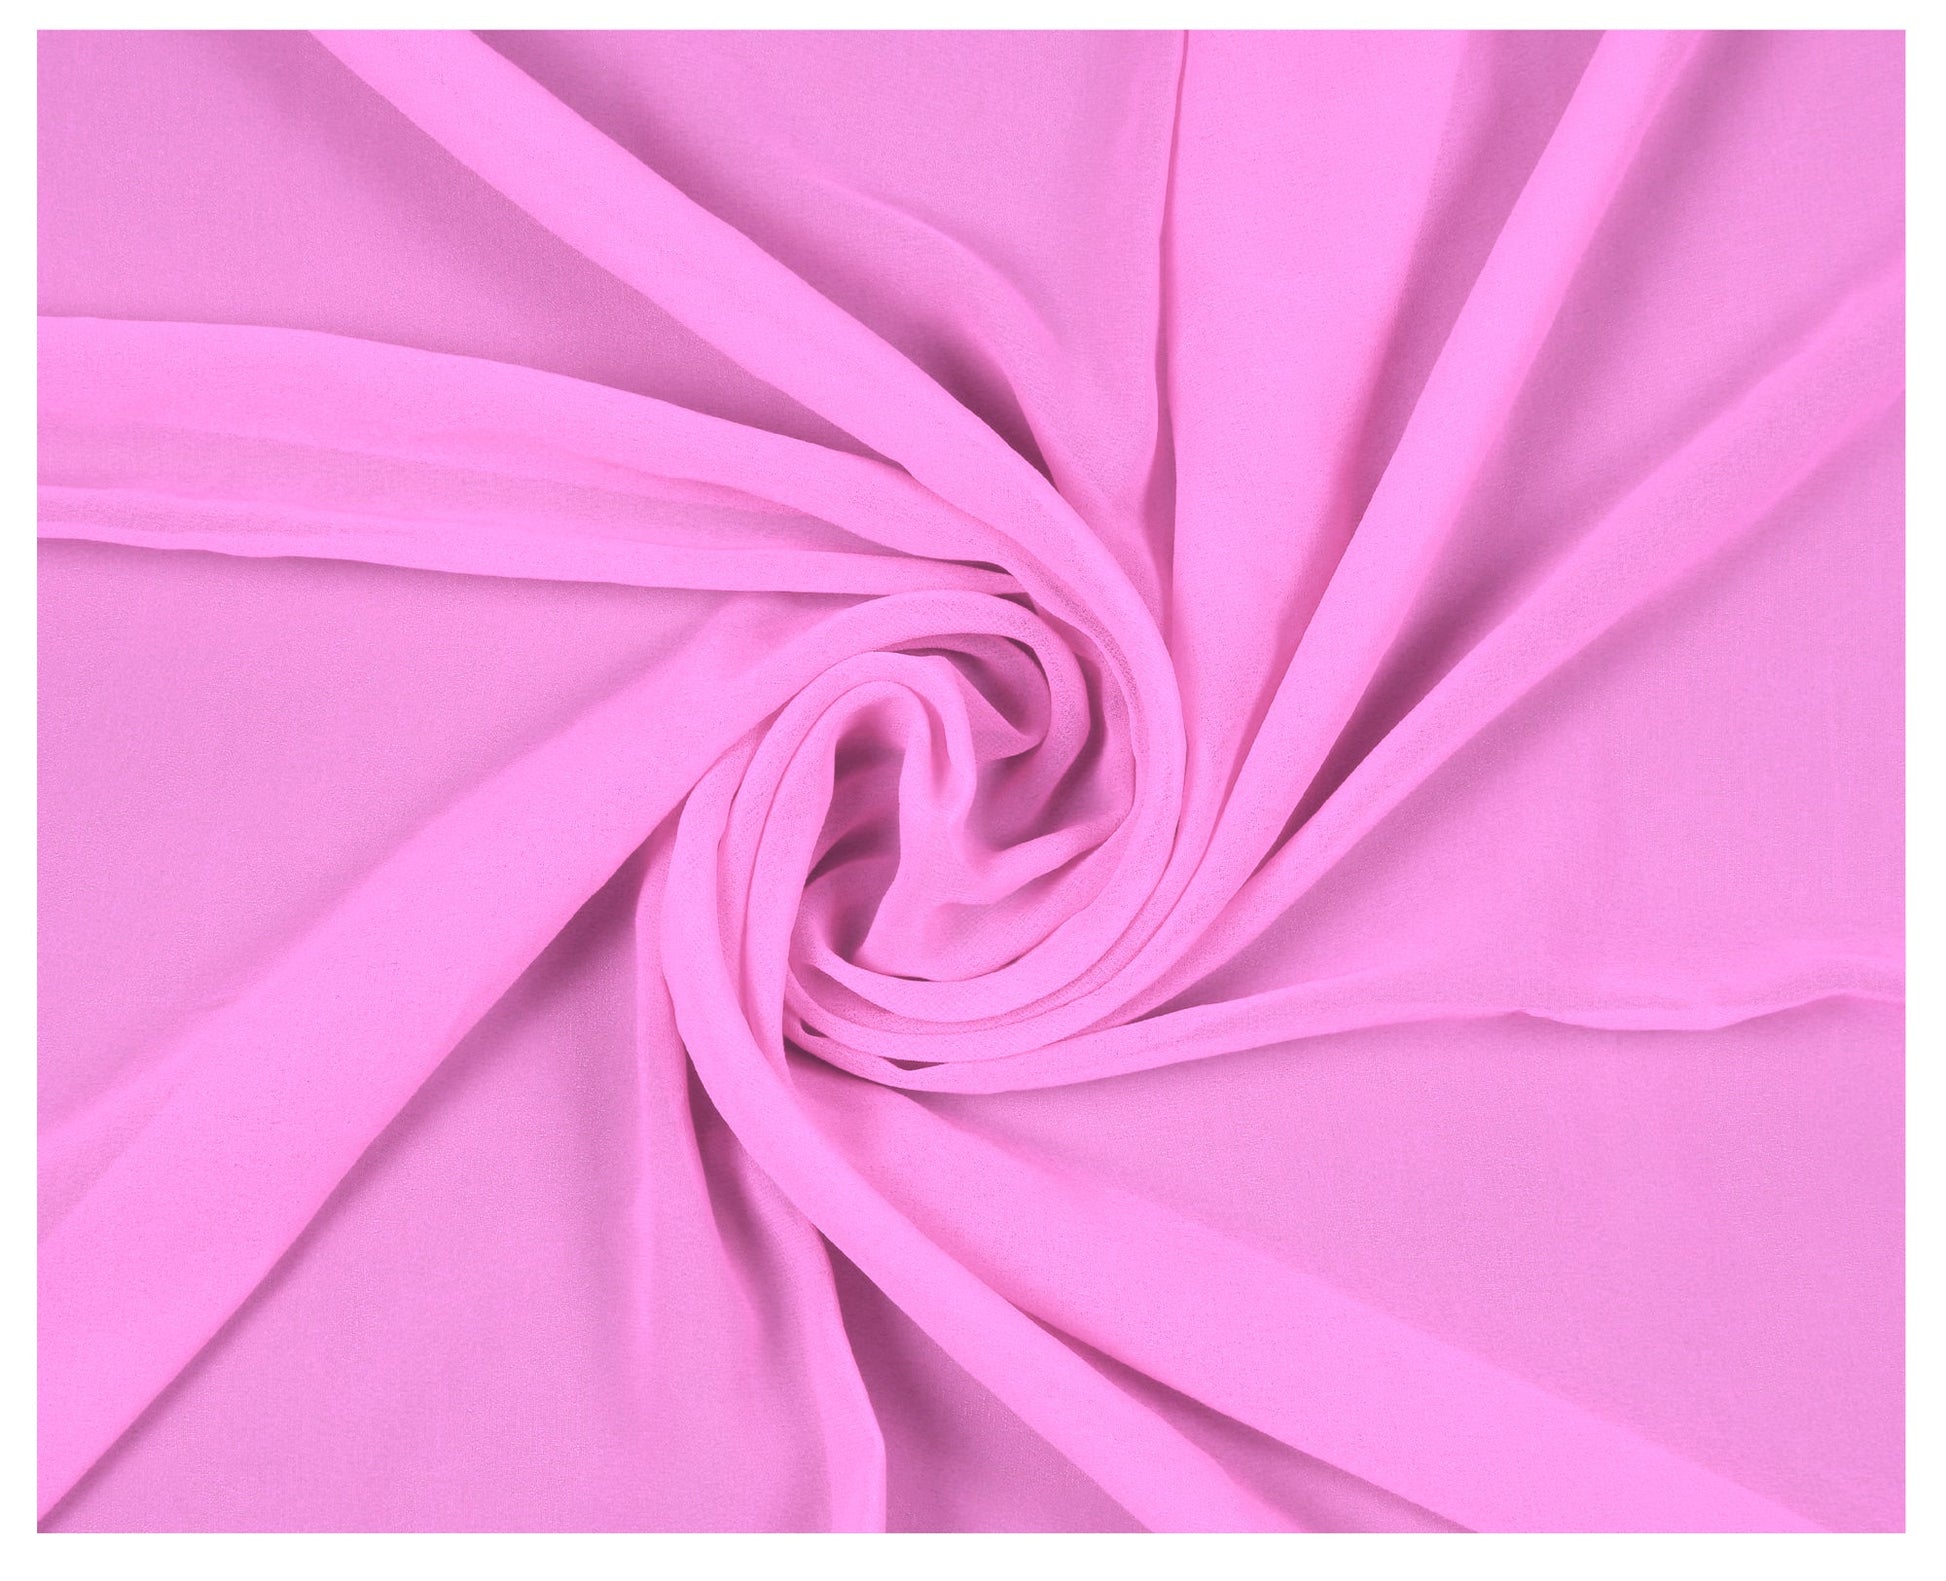 Bubblegum Pink,ce59f160-e564-4b50-8ca2-a1c2264be6d1